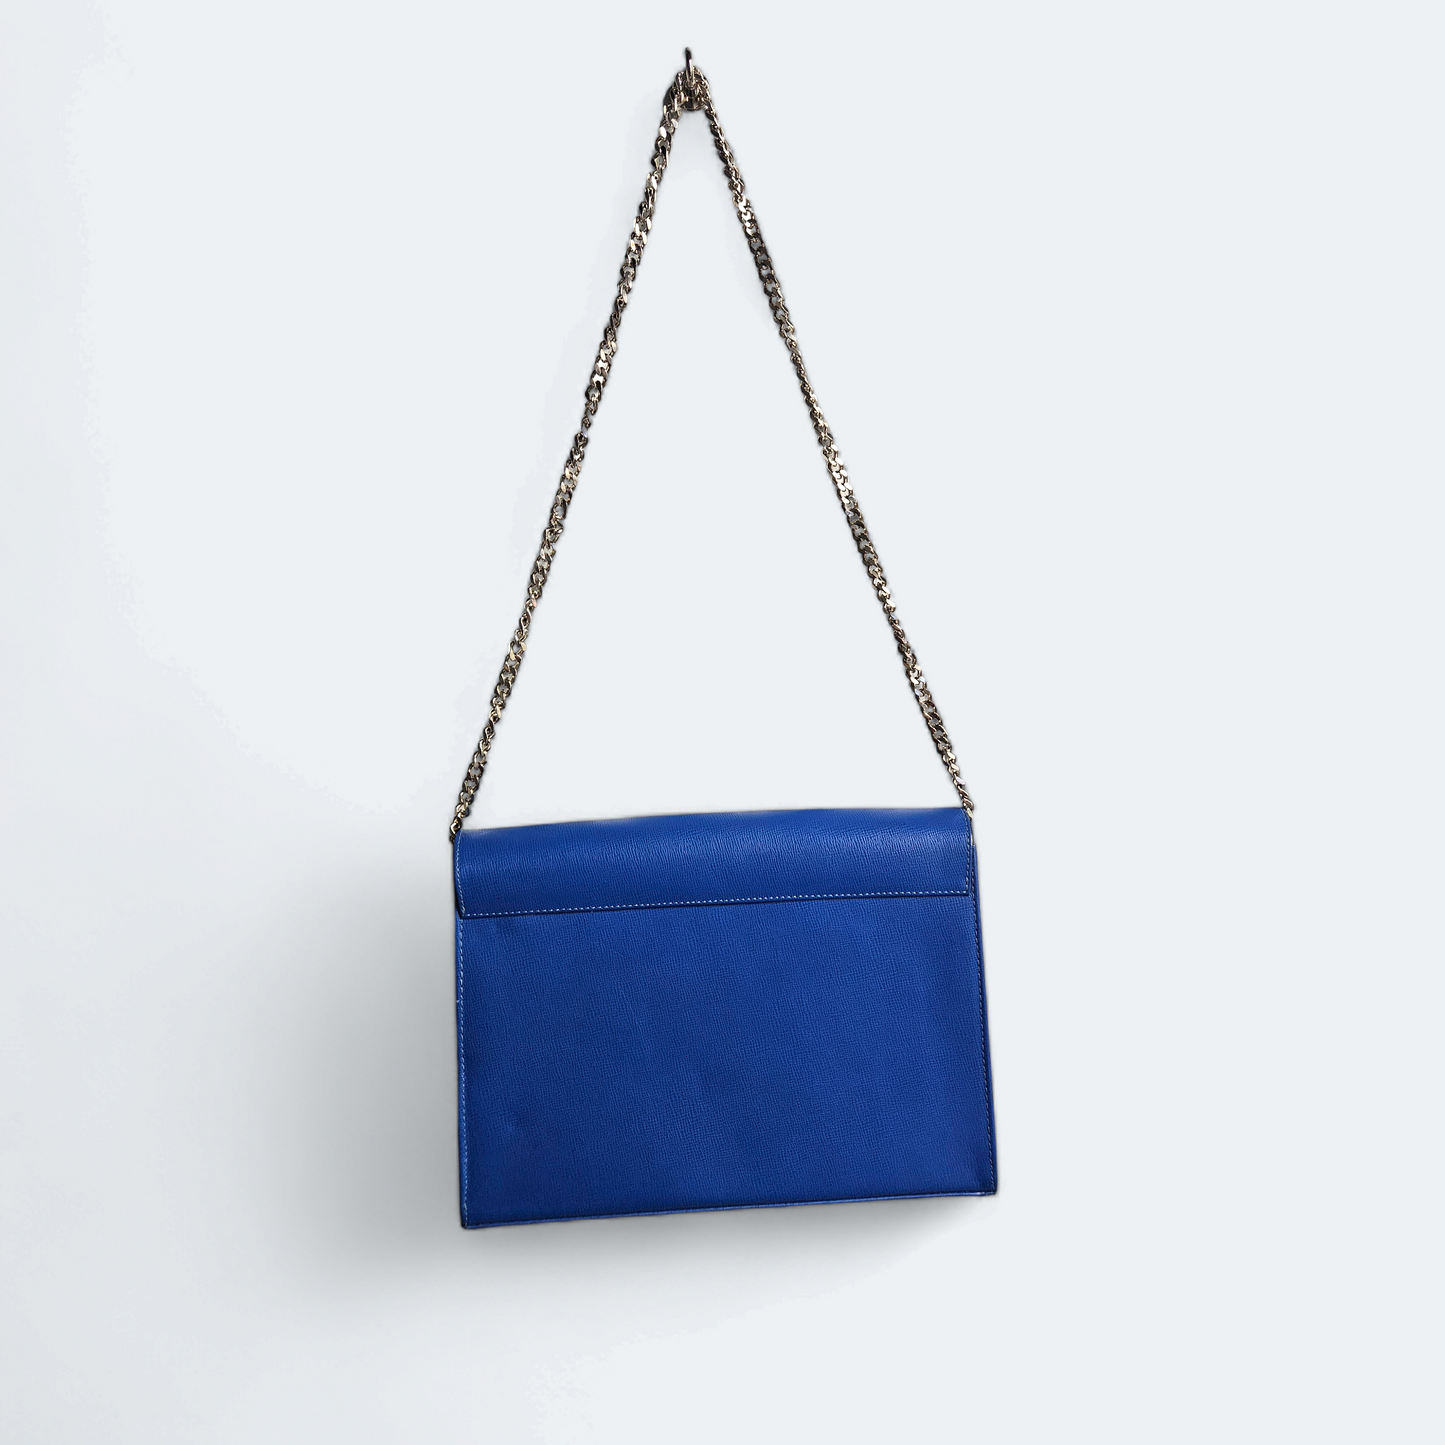 Blue shoulder bag